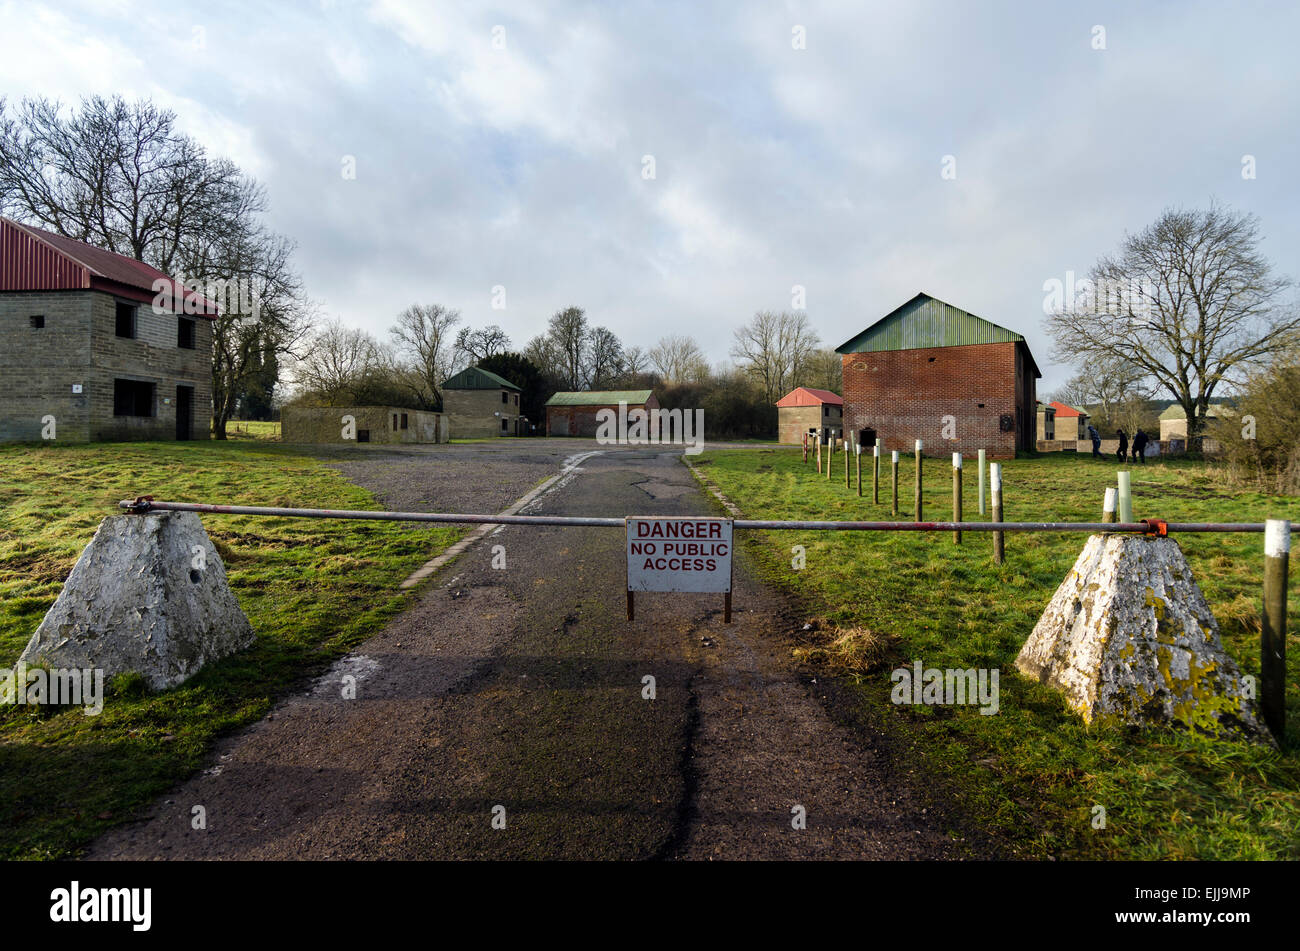 Centre de formation au combat en zone urbaine le village fantôme de Imber dans la plaine de Salisbury, Wiltshire, Angleterre, Royaume-Uni. Banque D'Images